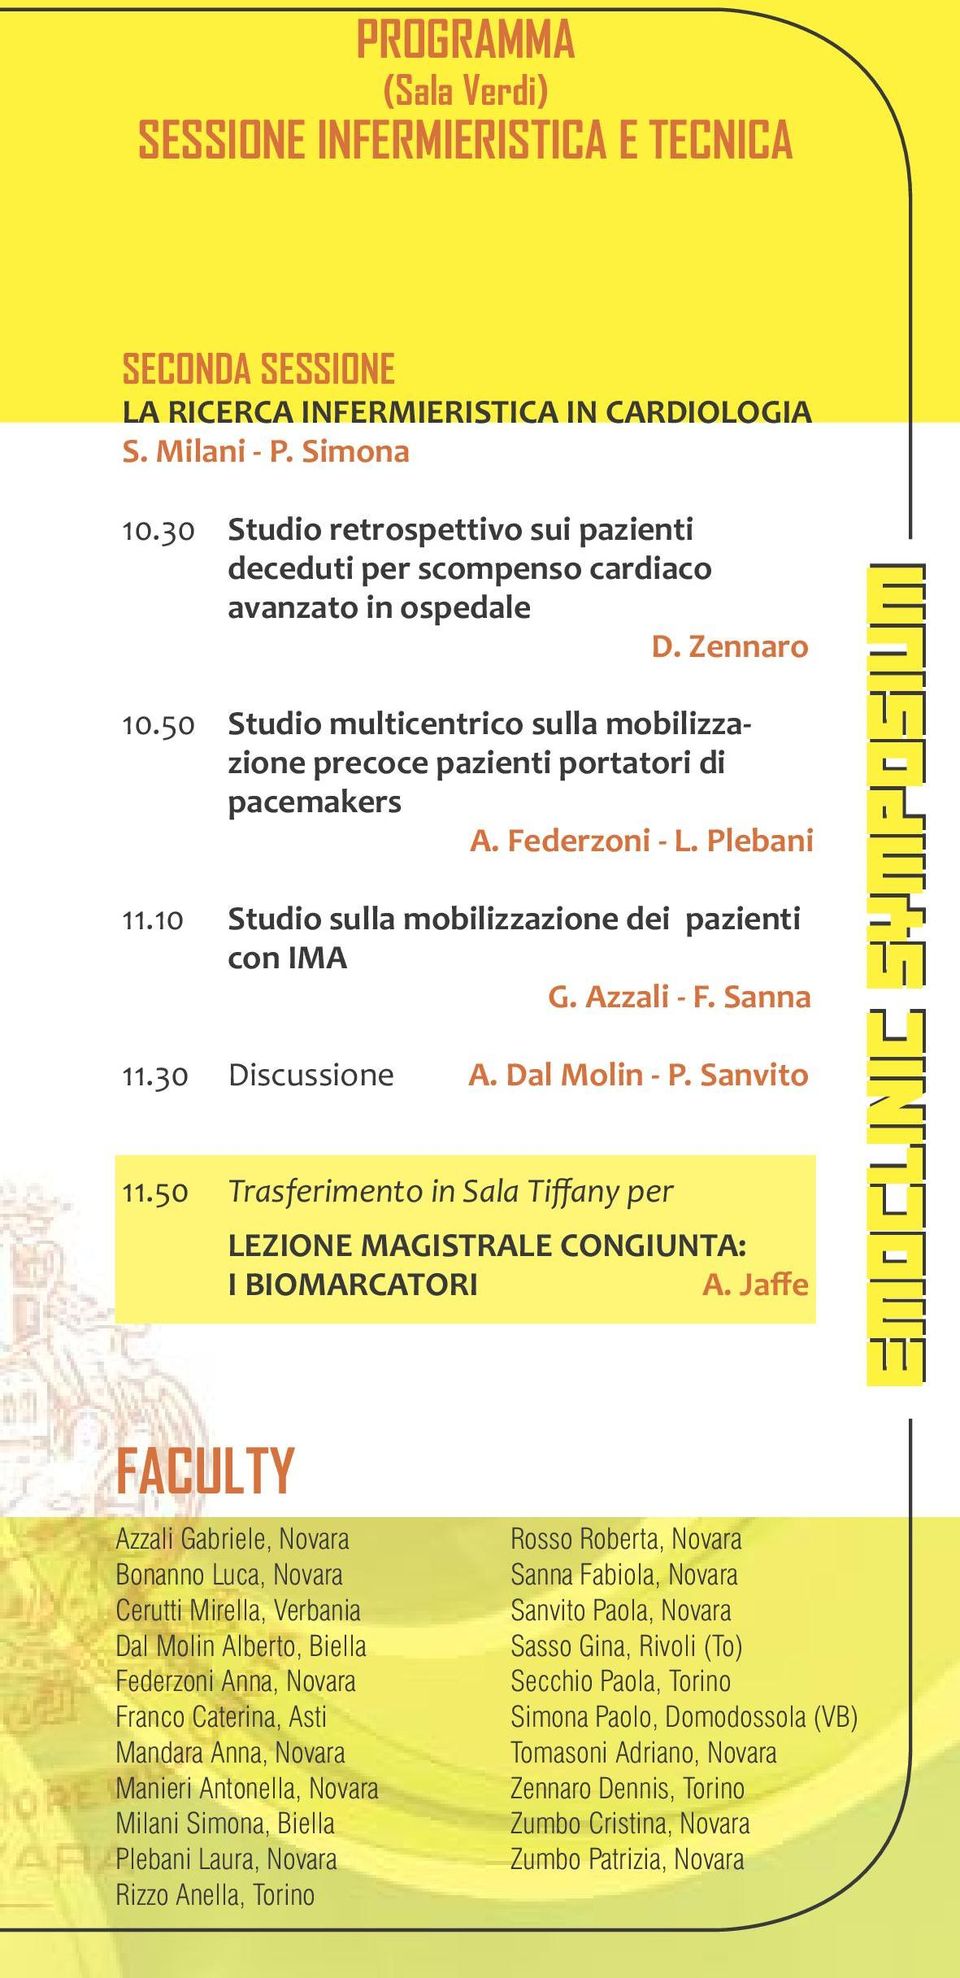 Federzoni - L. Plebani 11.10 Studio sulla mobilizzazione dei pazienti con ImA G. Azzali - F. Sanna 11.30 Discussione A. Dal molin - P. Sanvito 11.